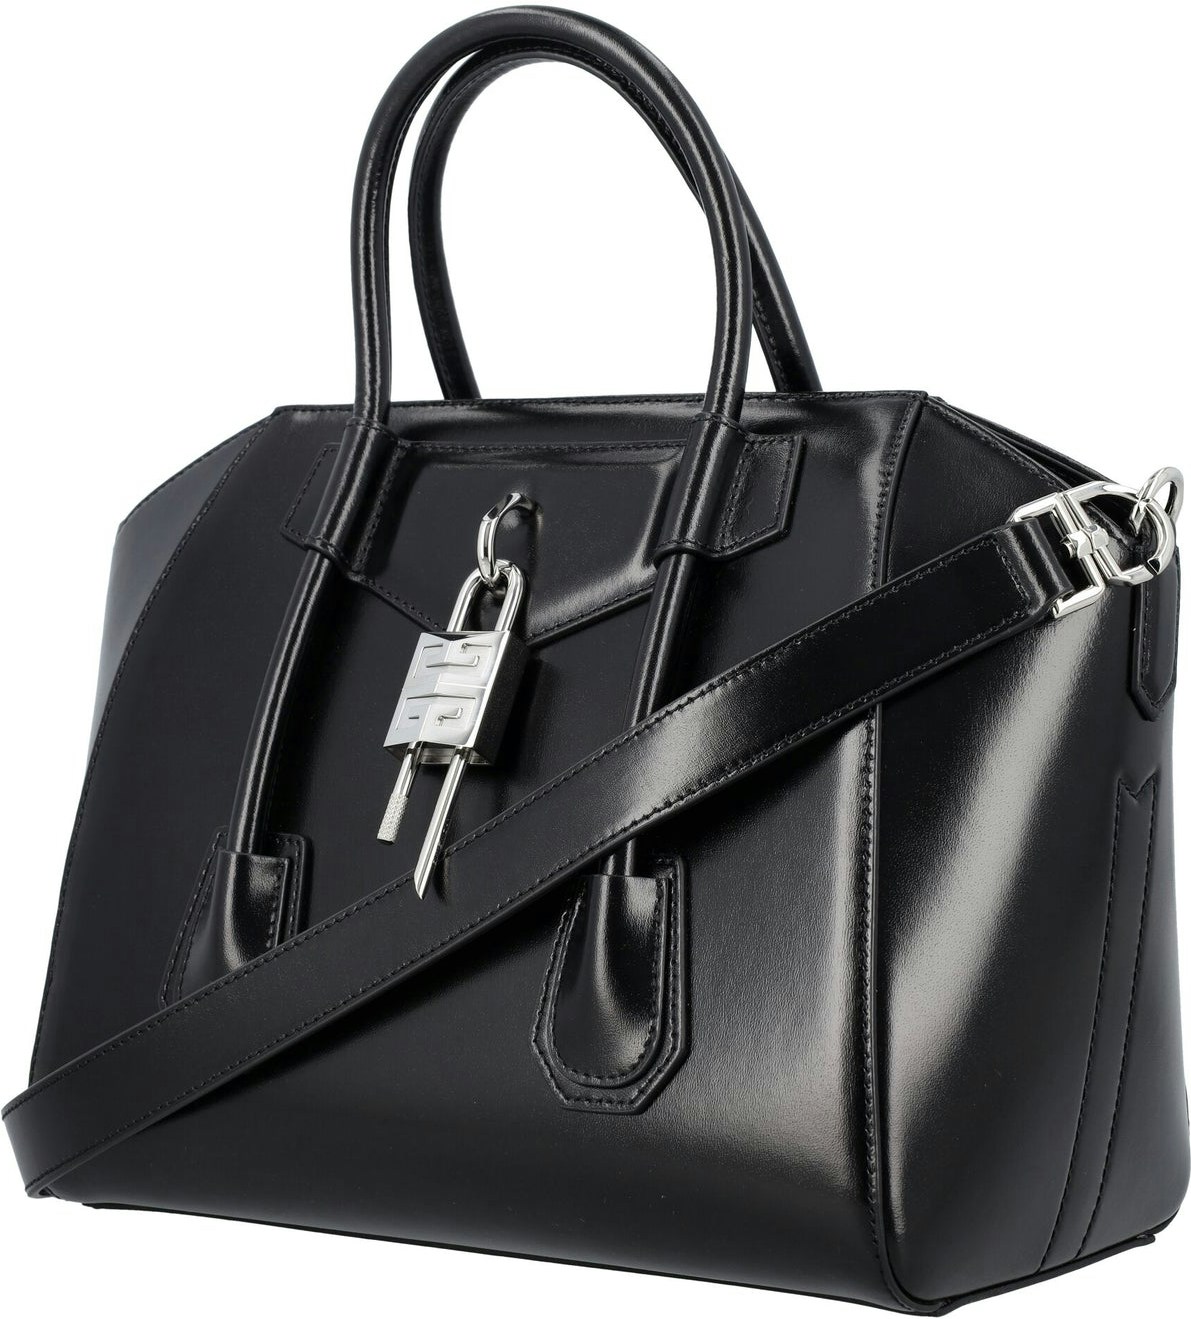 Givenchy Women's Antigona Lock Small Handbag - Black - Totes